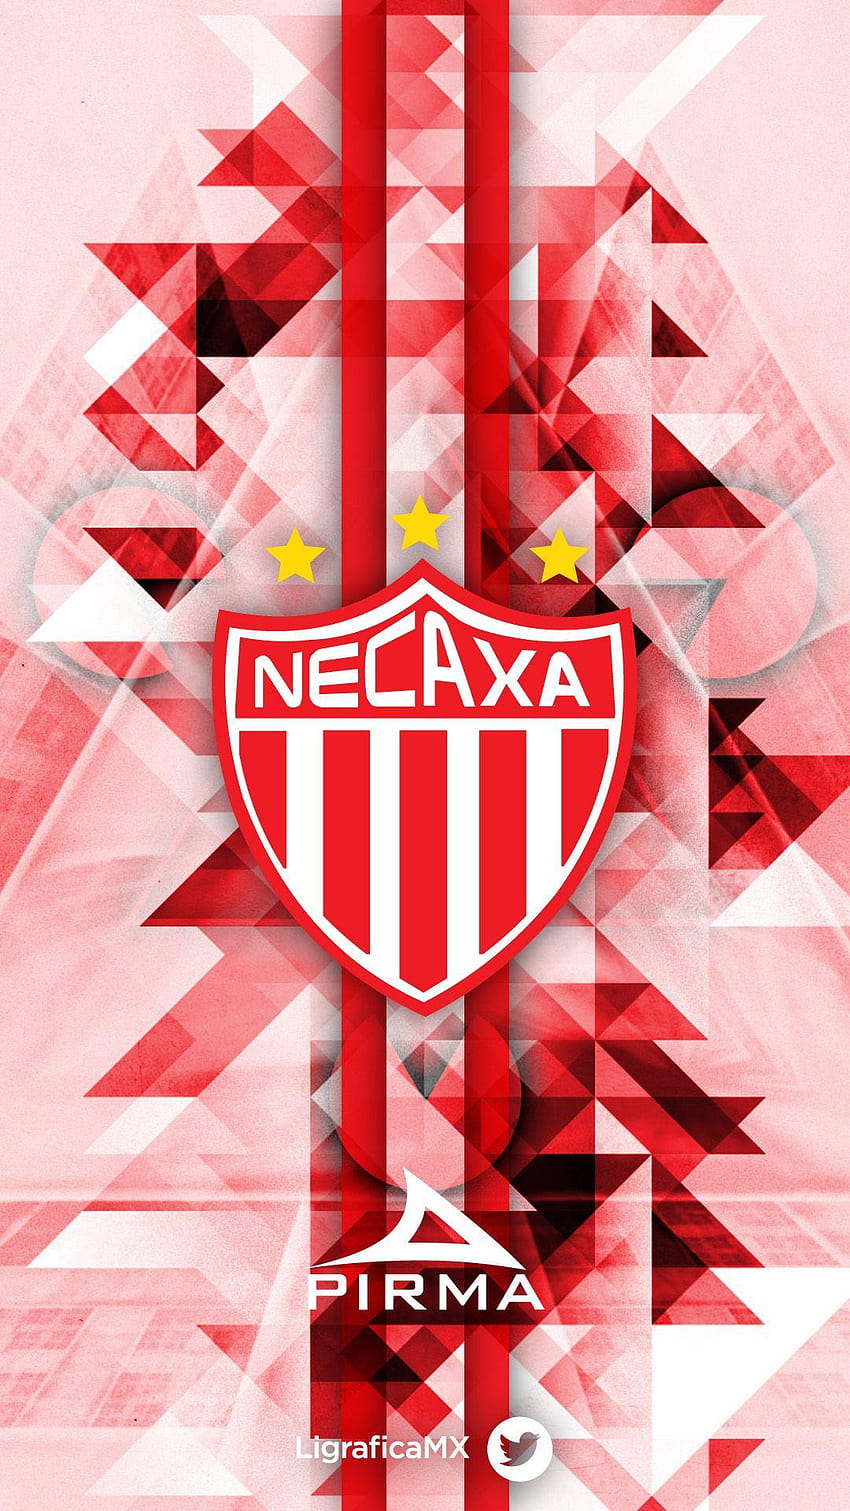 Club Necaxa • LigraficaMX 280314CTG ¡El fútbol nos inspira! HD phone wallpaper